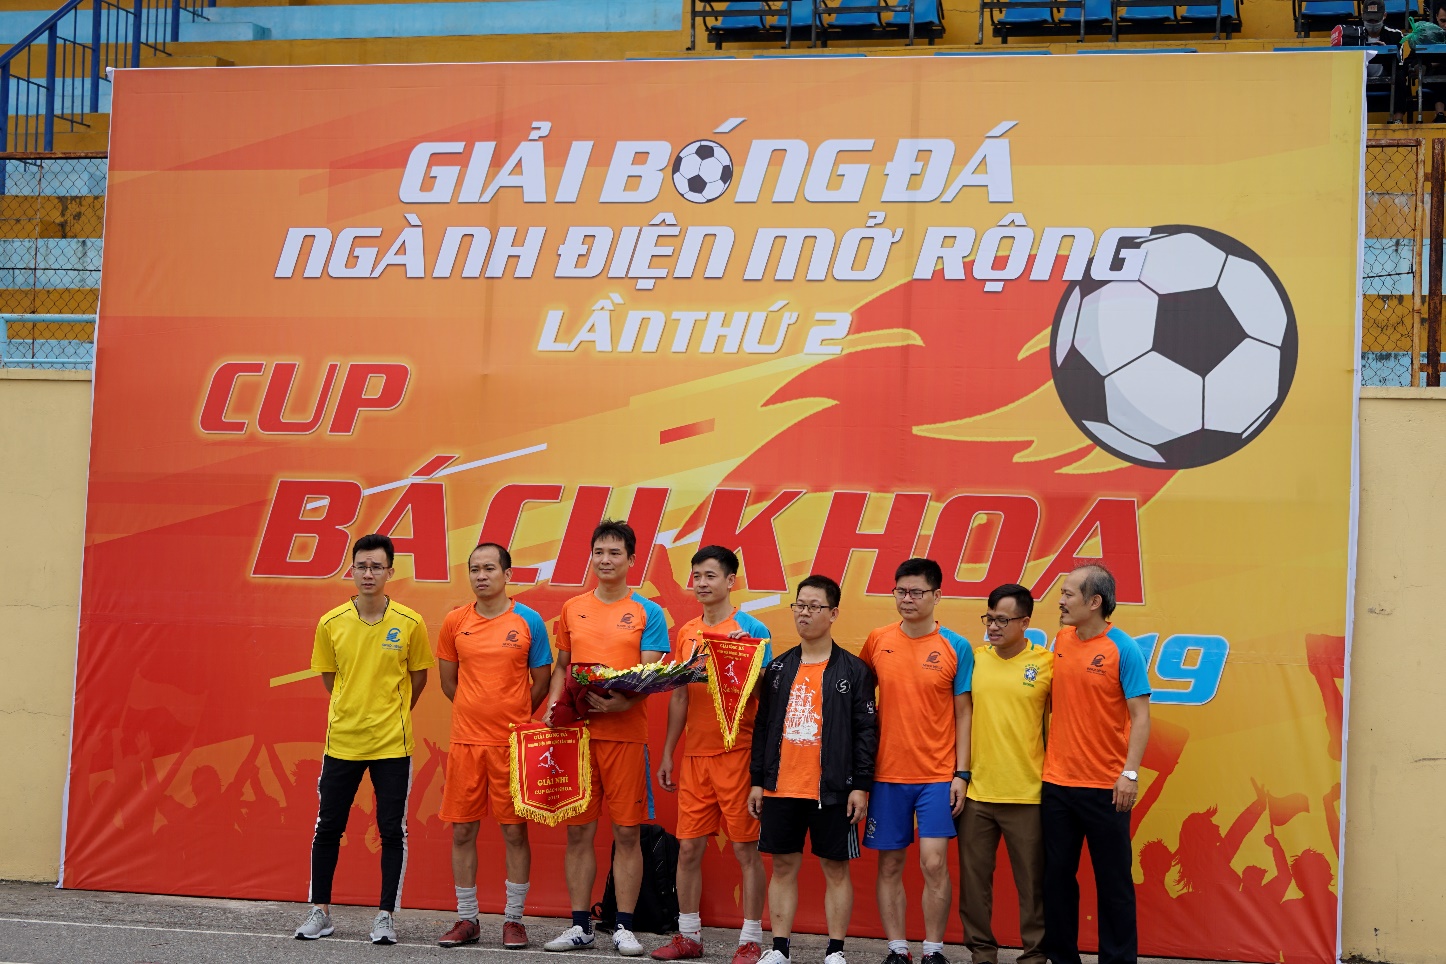 Giải bóng đá ngành Điện các trường đại học khu vực Hà Nội lần thứ II, 2019